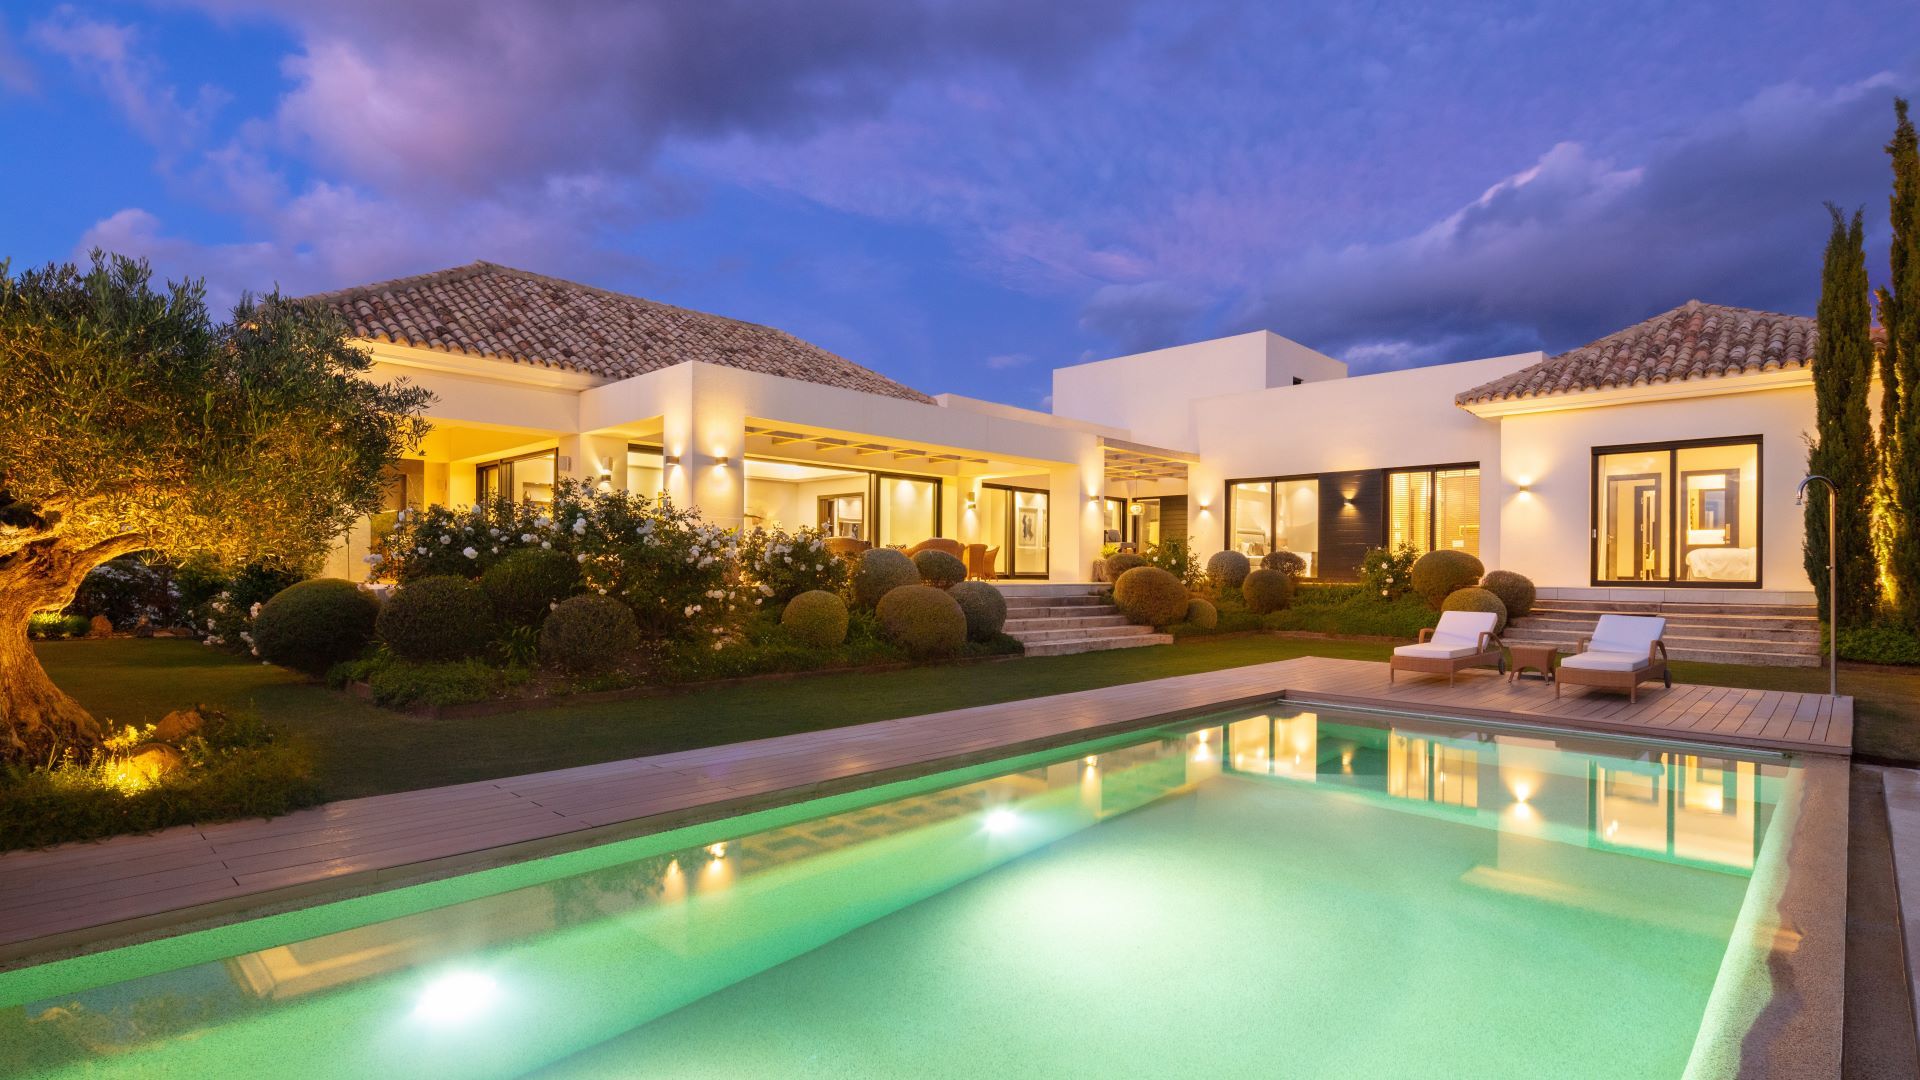 Charming villa with sea views in Nueva Andalucia, Marbella | Engel & Völkers Marbella